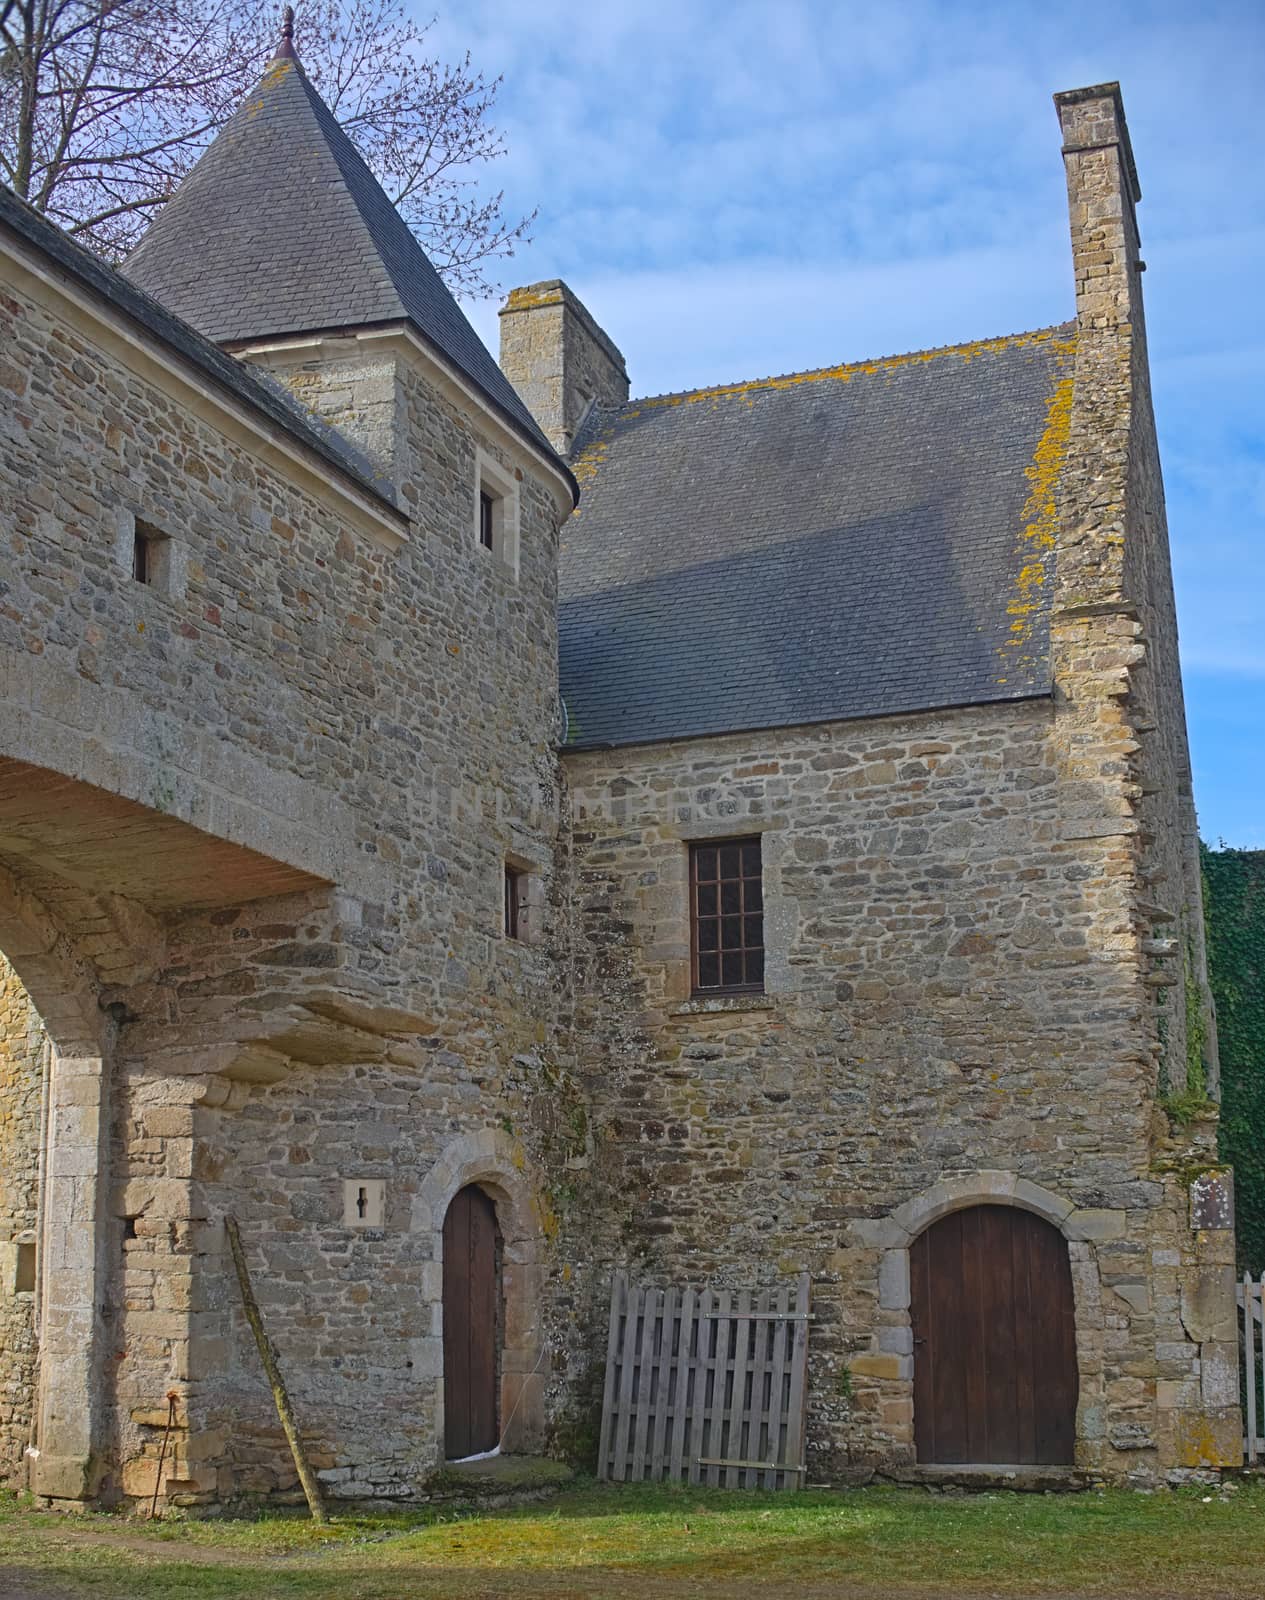 Gate and entrance building into castle Monfert, France